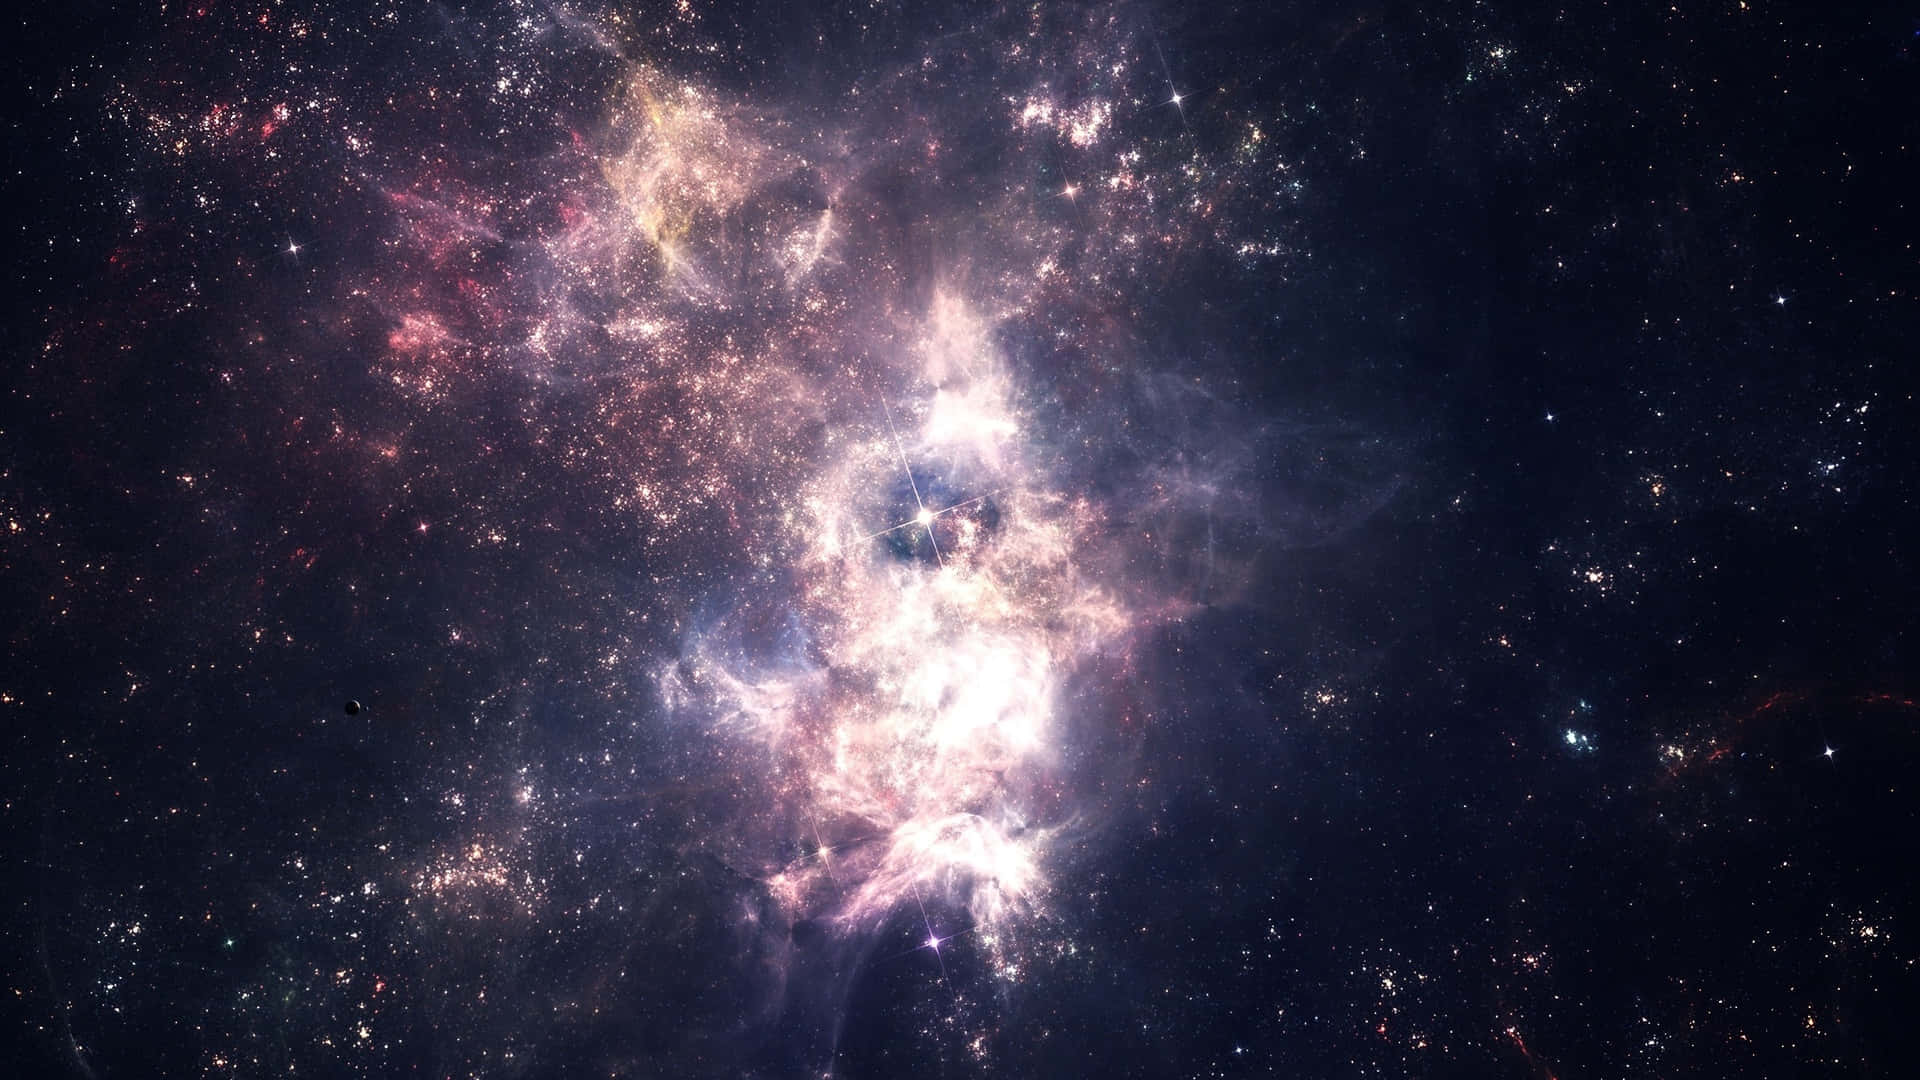 Stunning Star Cluster Illuminating the Night Sky Wallpaper